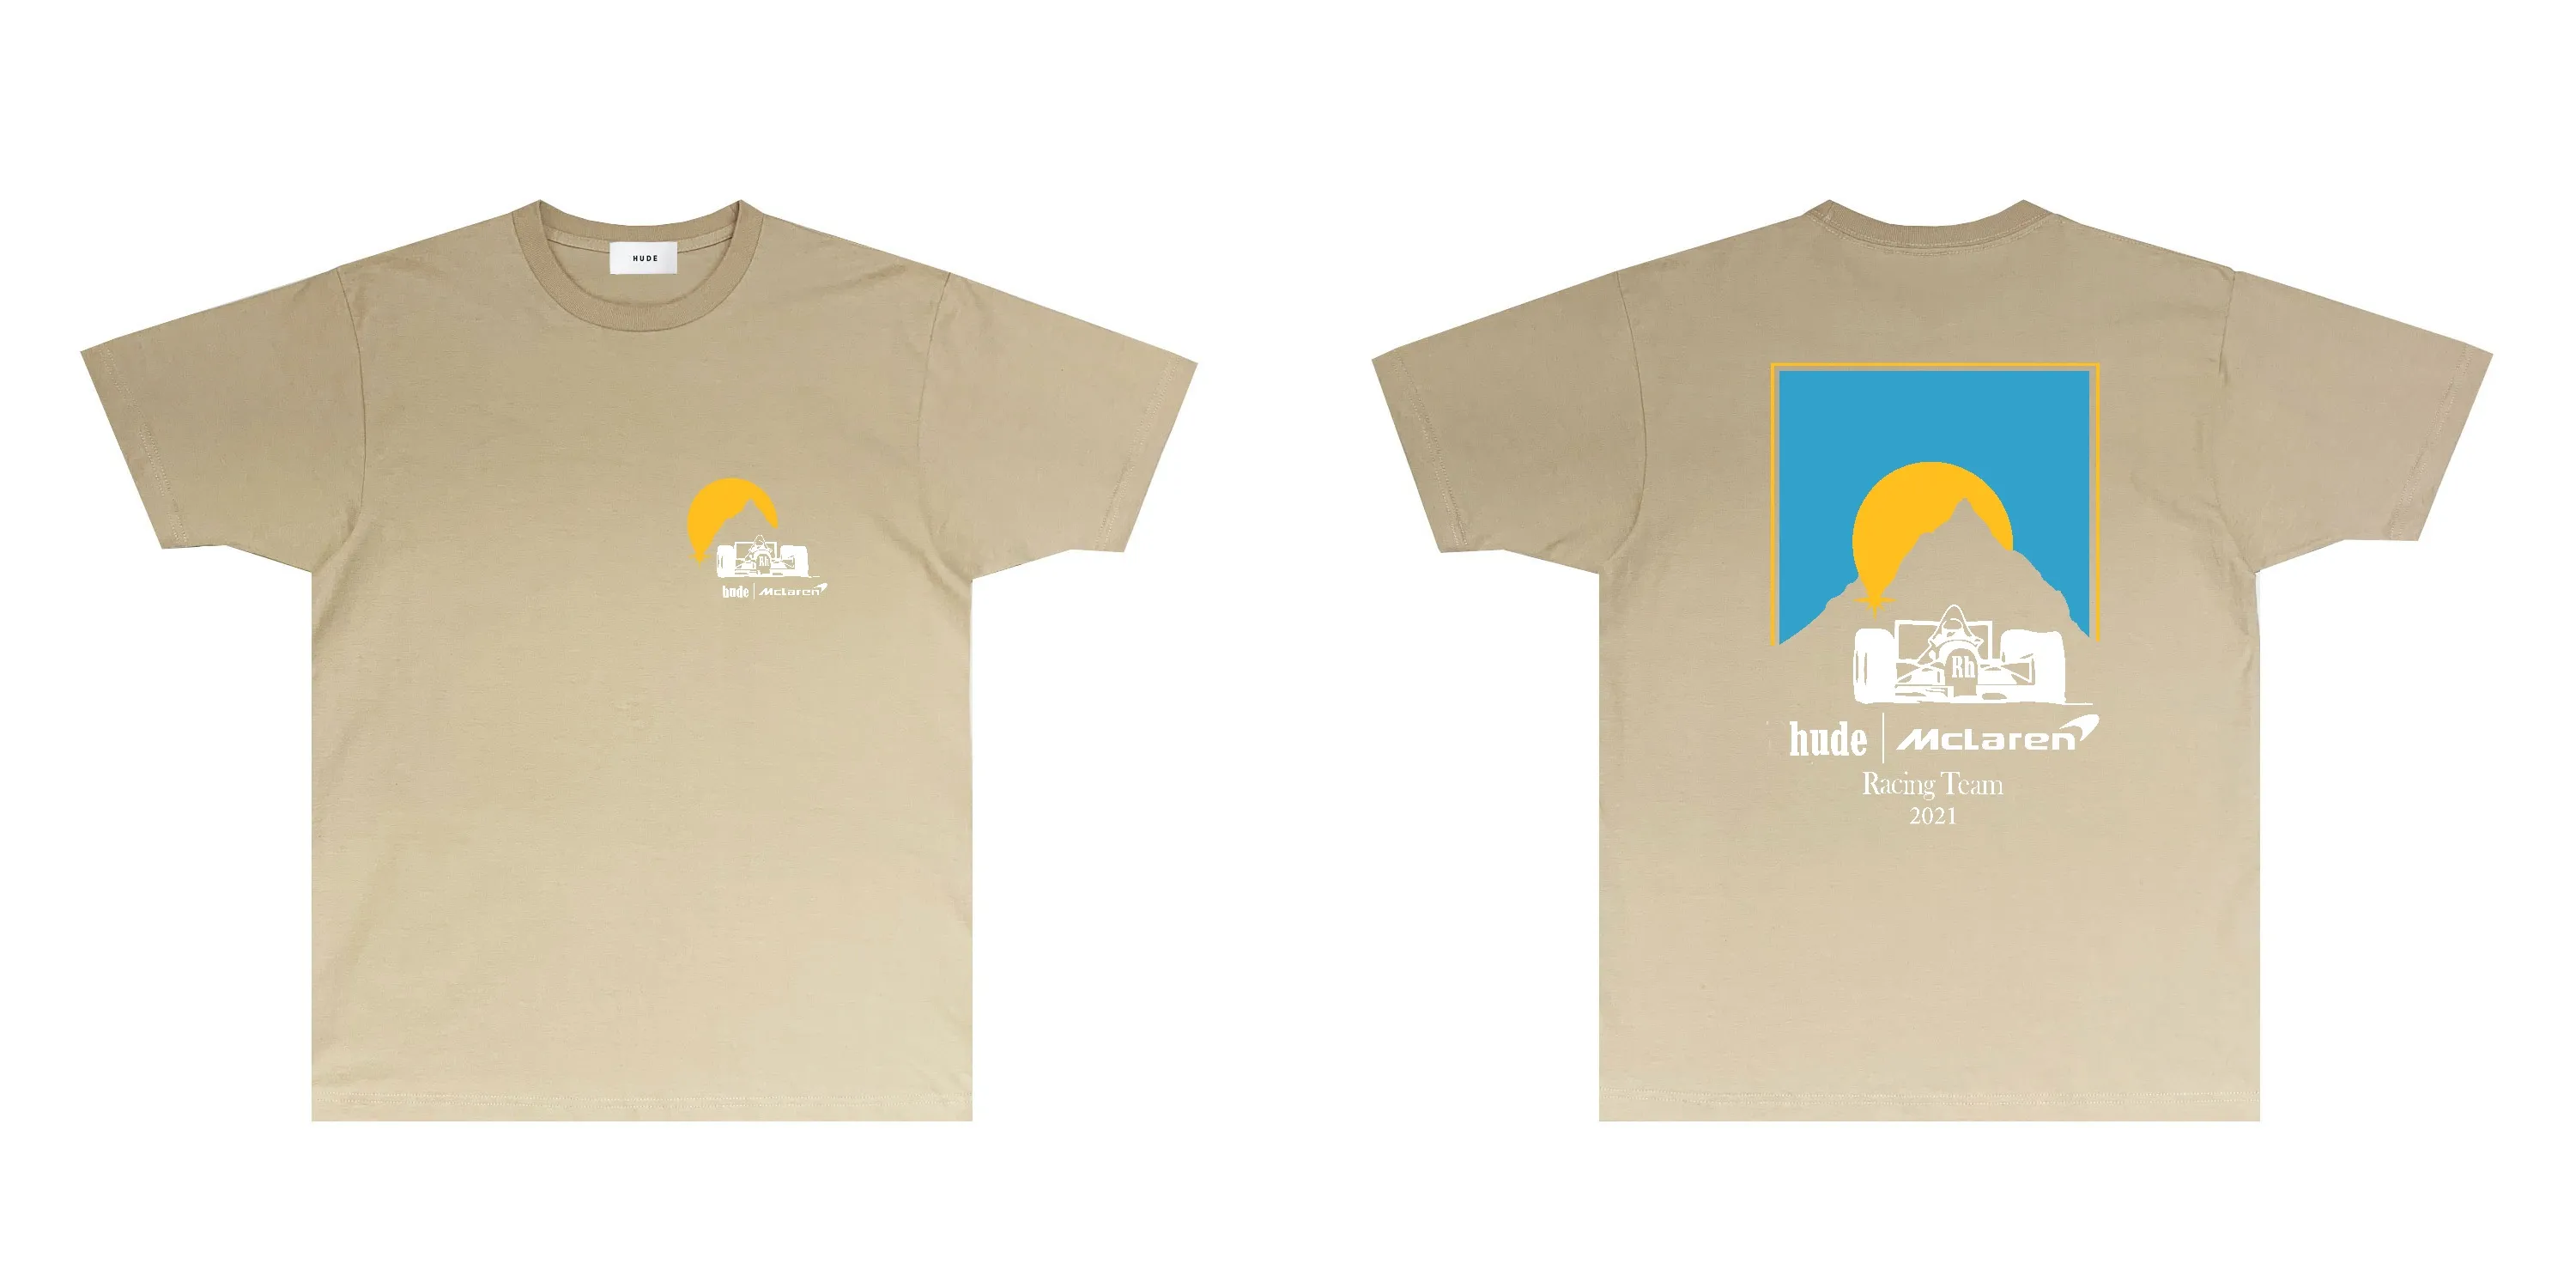 мужская дизайнерская футболка женская трендовая брендовая футболка Модная летняя футболка с коротким рукавом RH122 Sunrise Racing с принтом и короткими рукавами, размер S-XXL